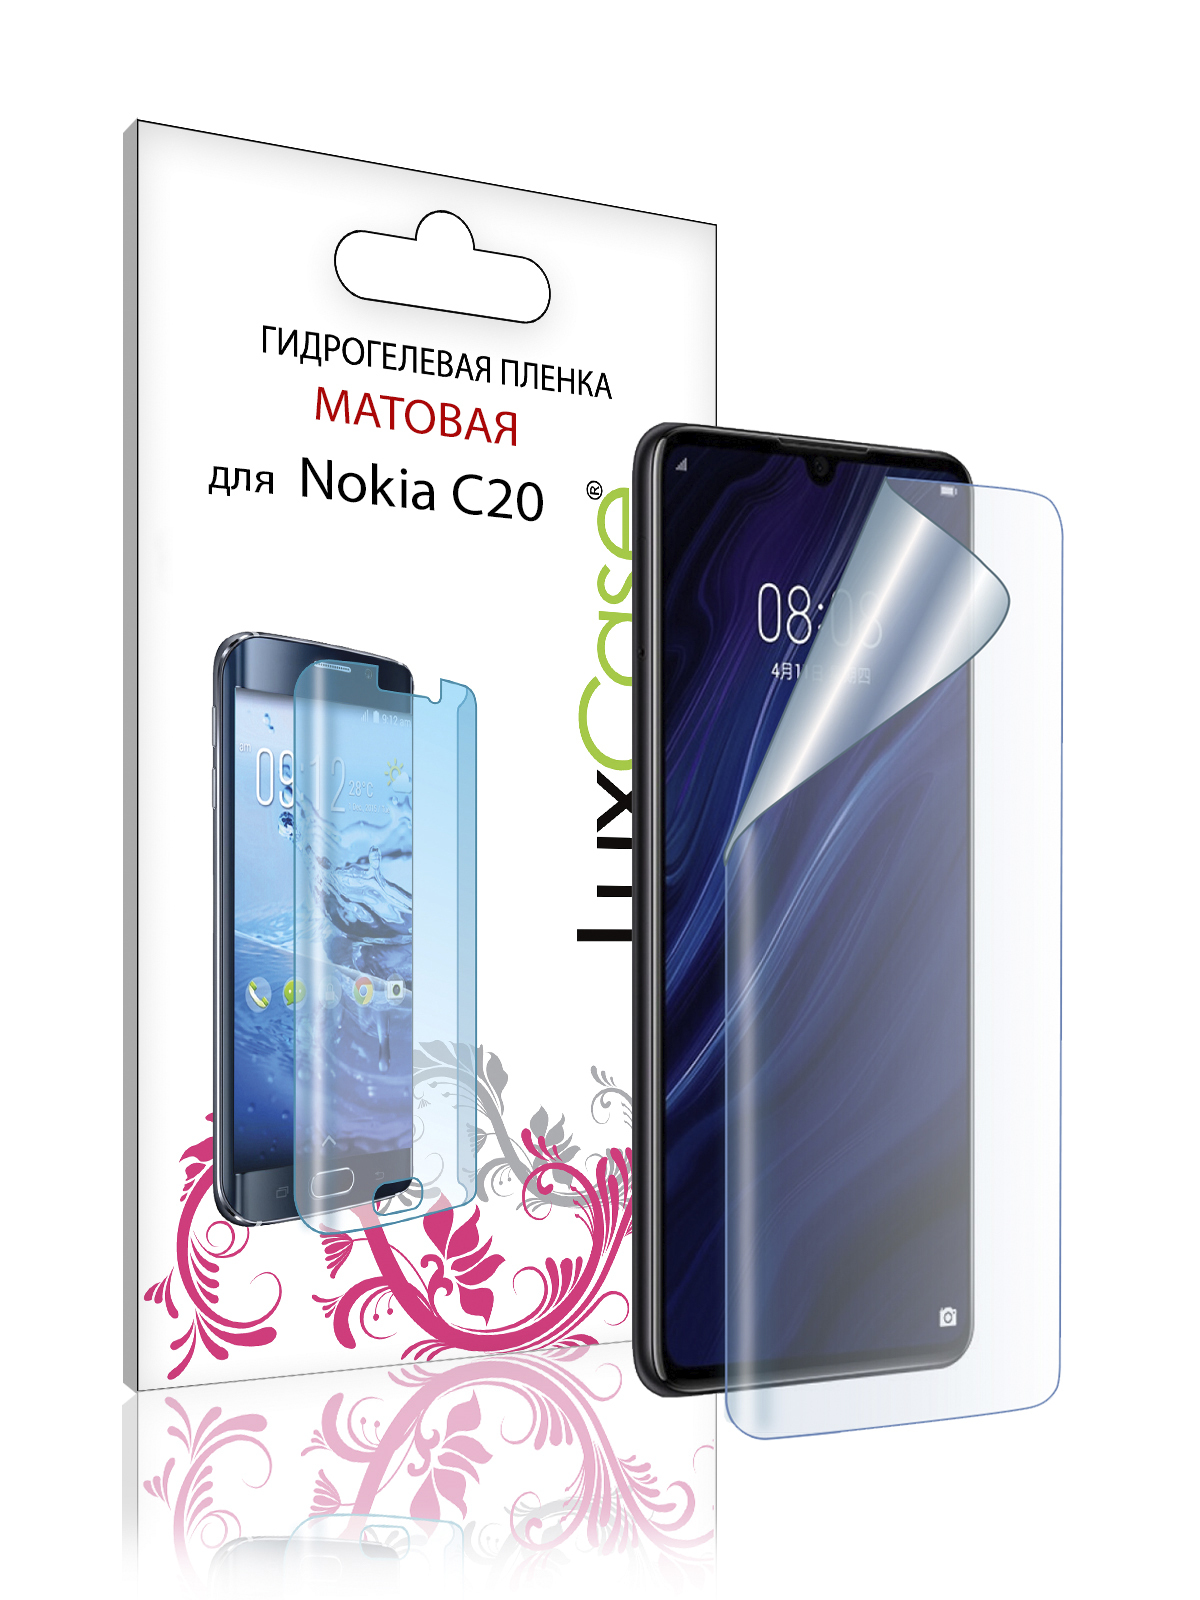 Пленка гидрогелевая LuxCase для Nokia C20 0.14mm Front Matte 86450 гидрогелевая пленка с вырезом под камеру для нокиа с20 плюс nokia c20 plus